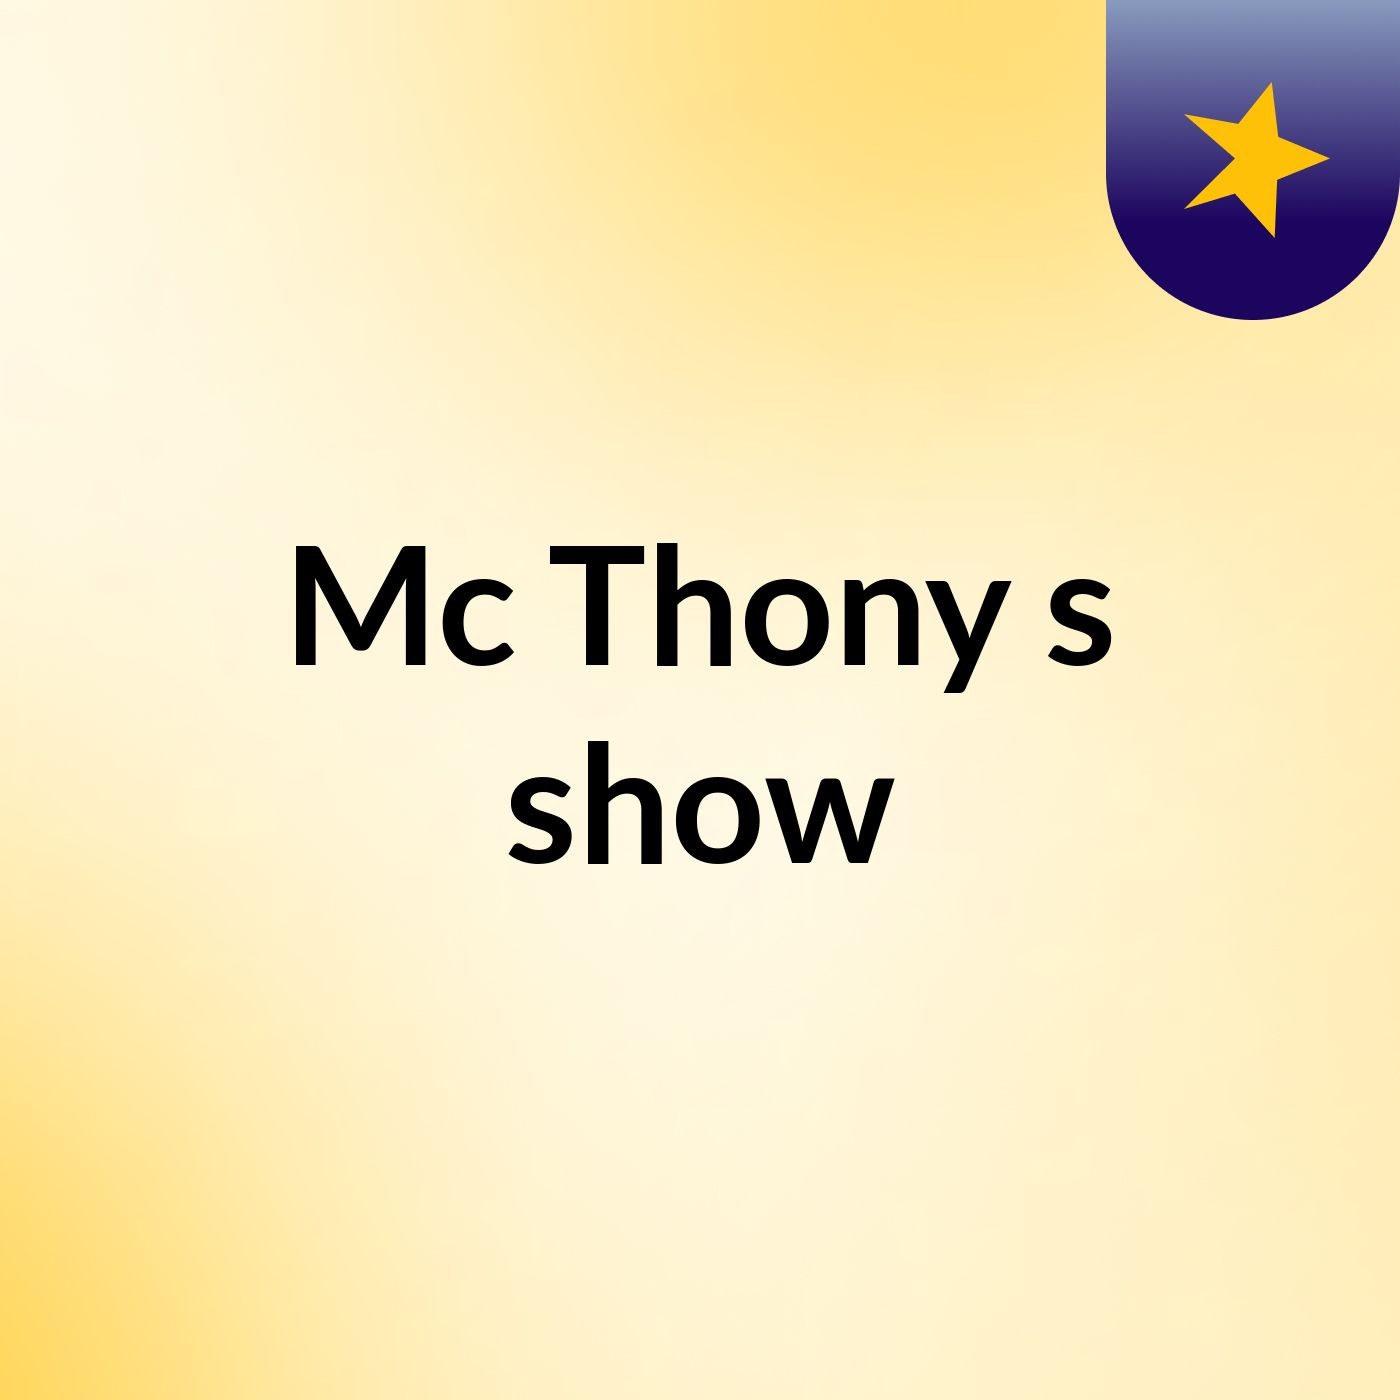 Mc Thony's show